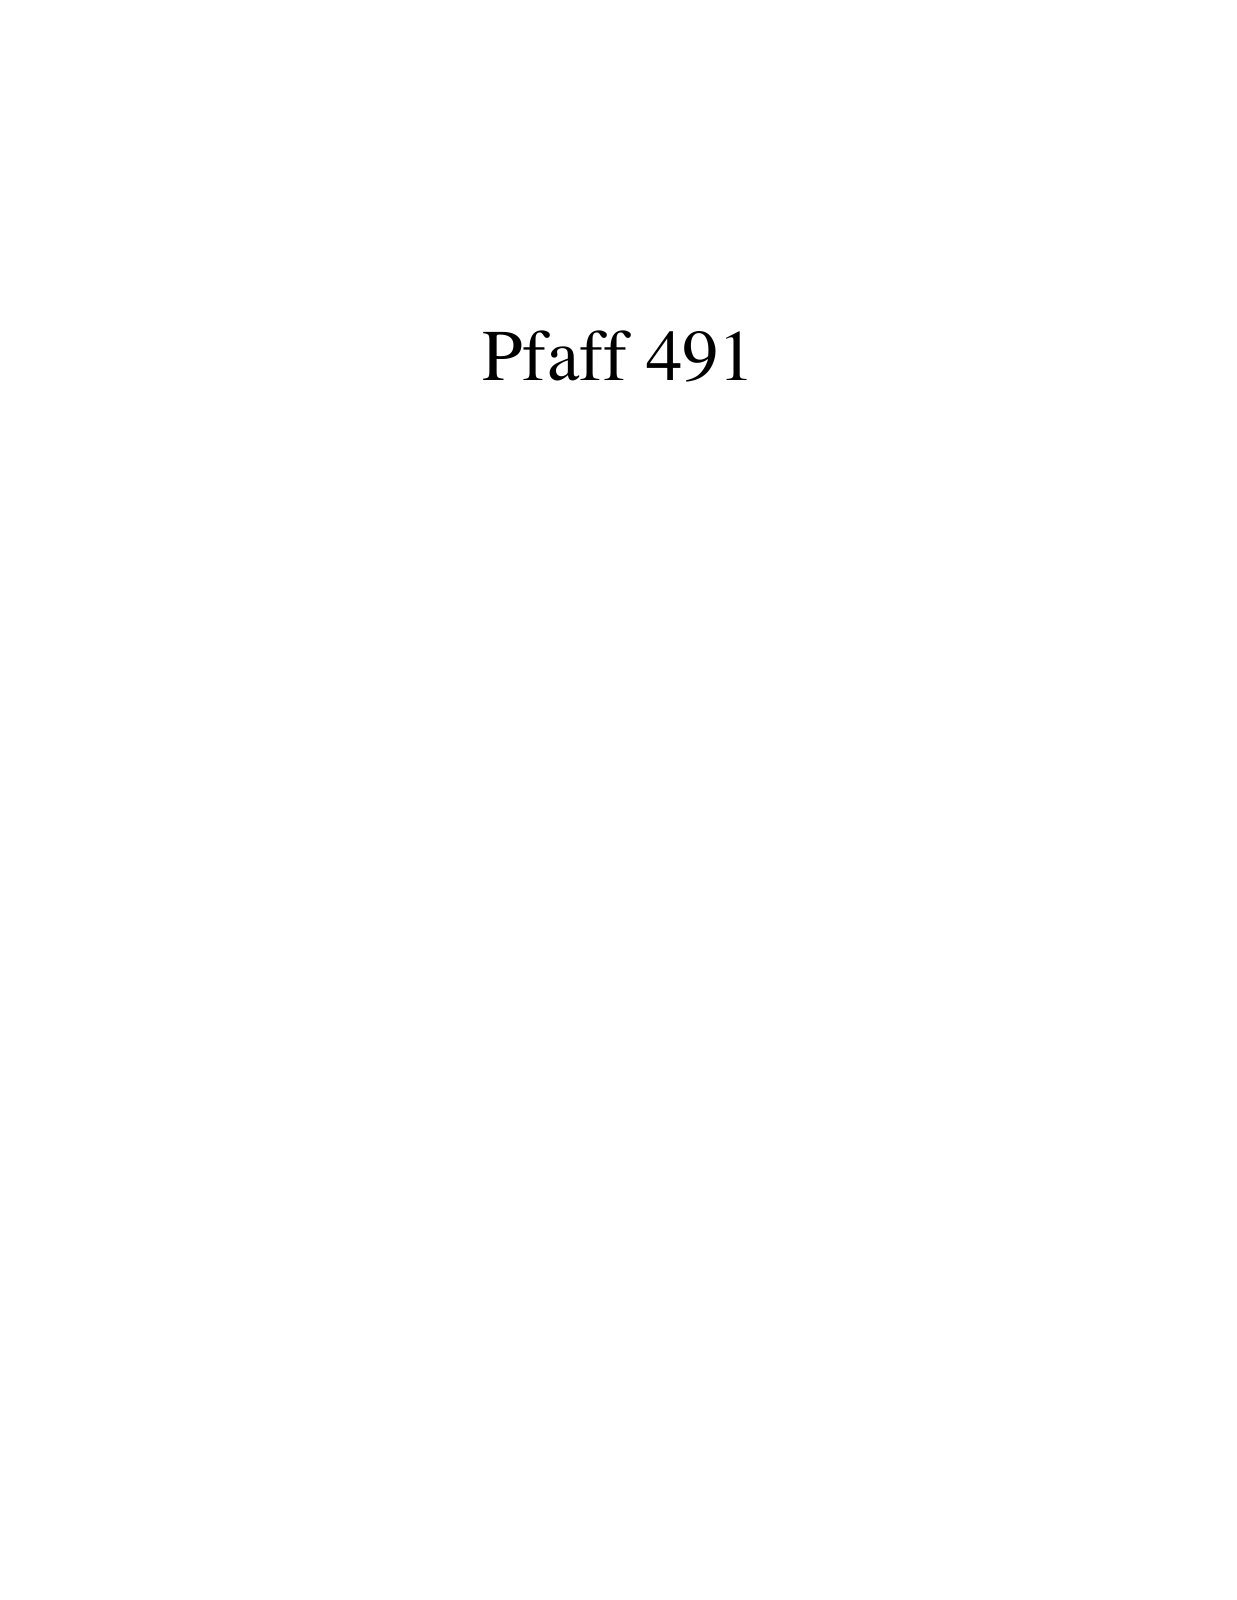 PFAFF 491 Parts List